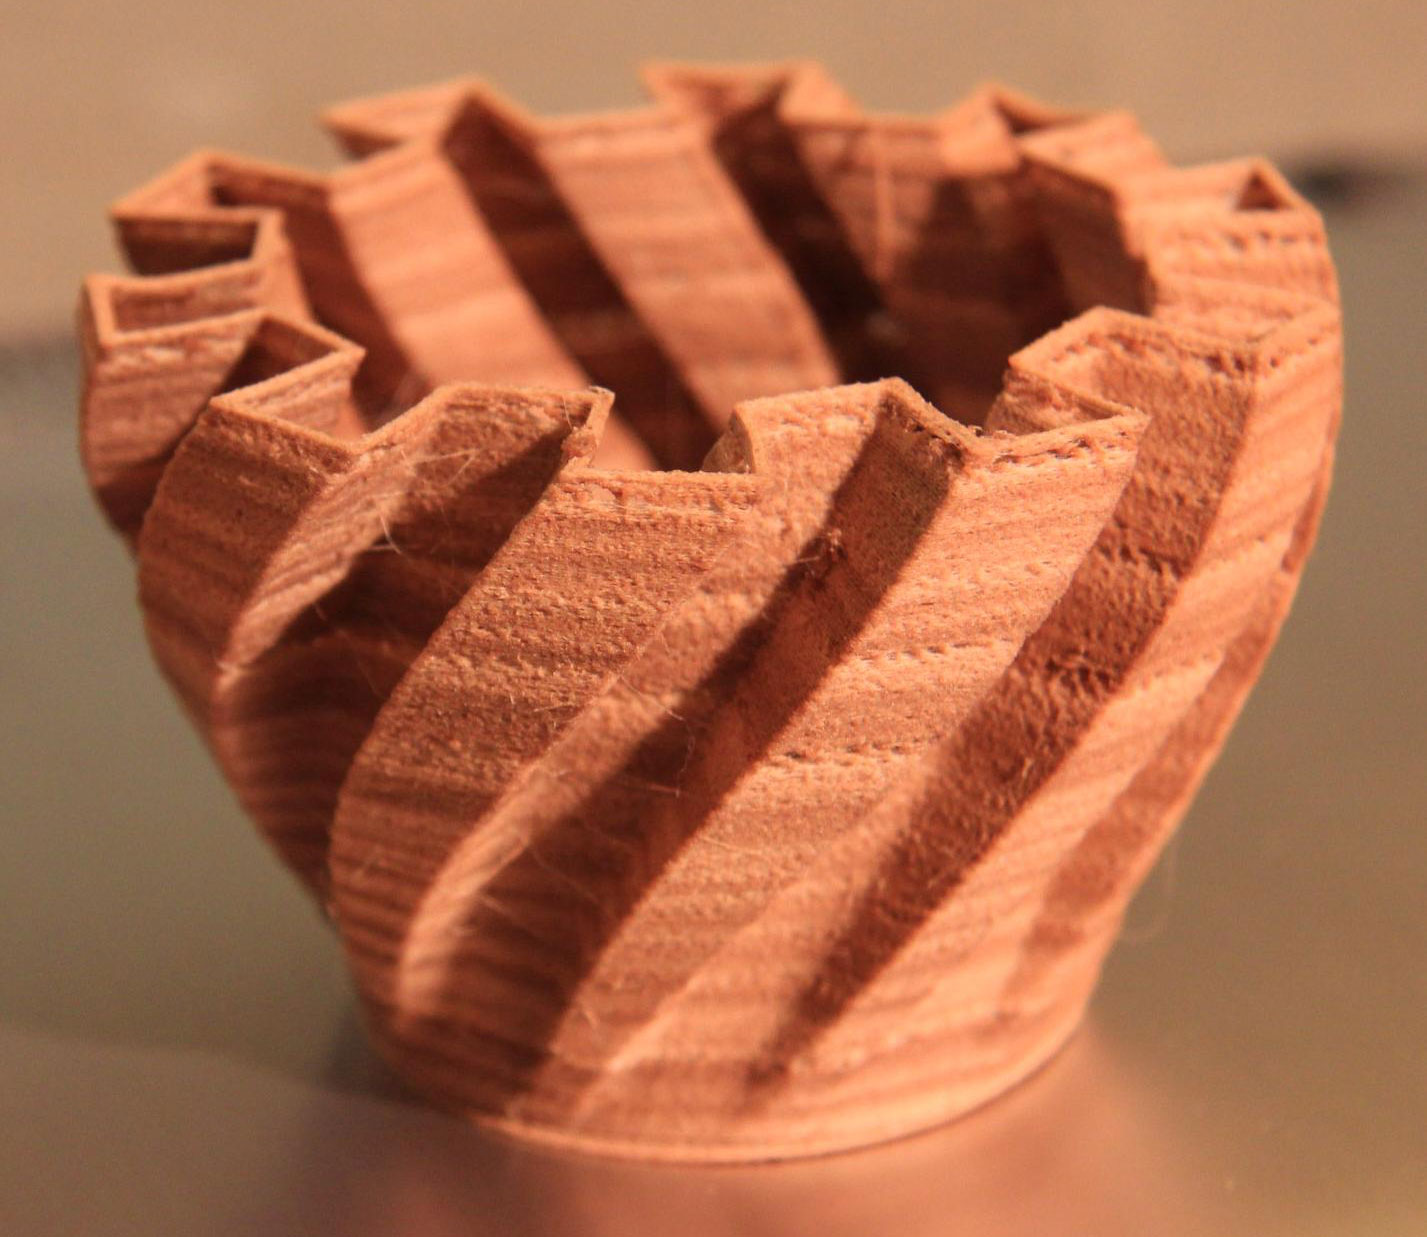 Wood Filament มาพิมพ์ไม้กันเถอะ